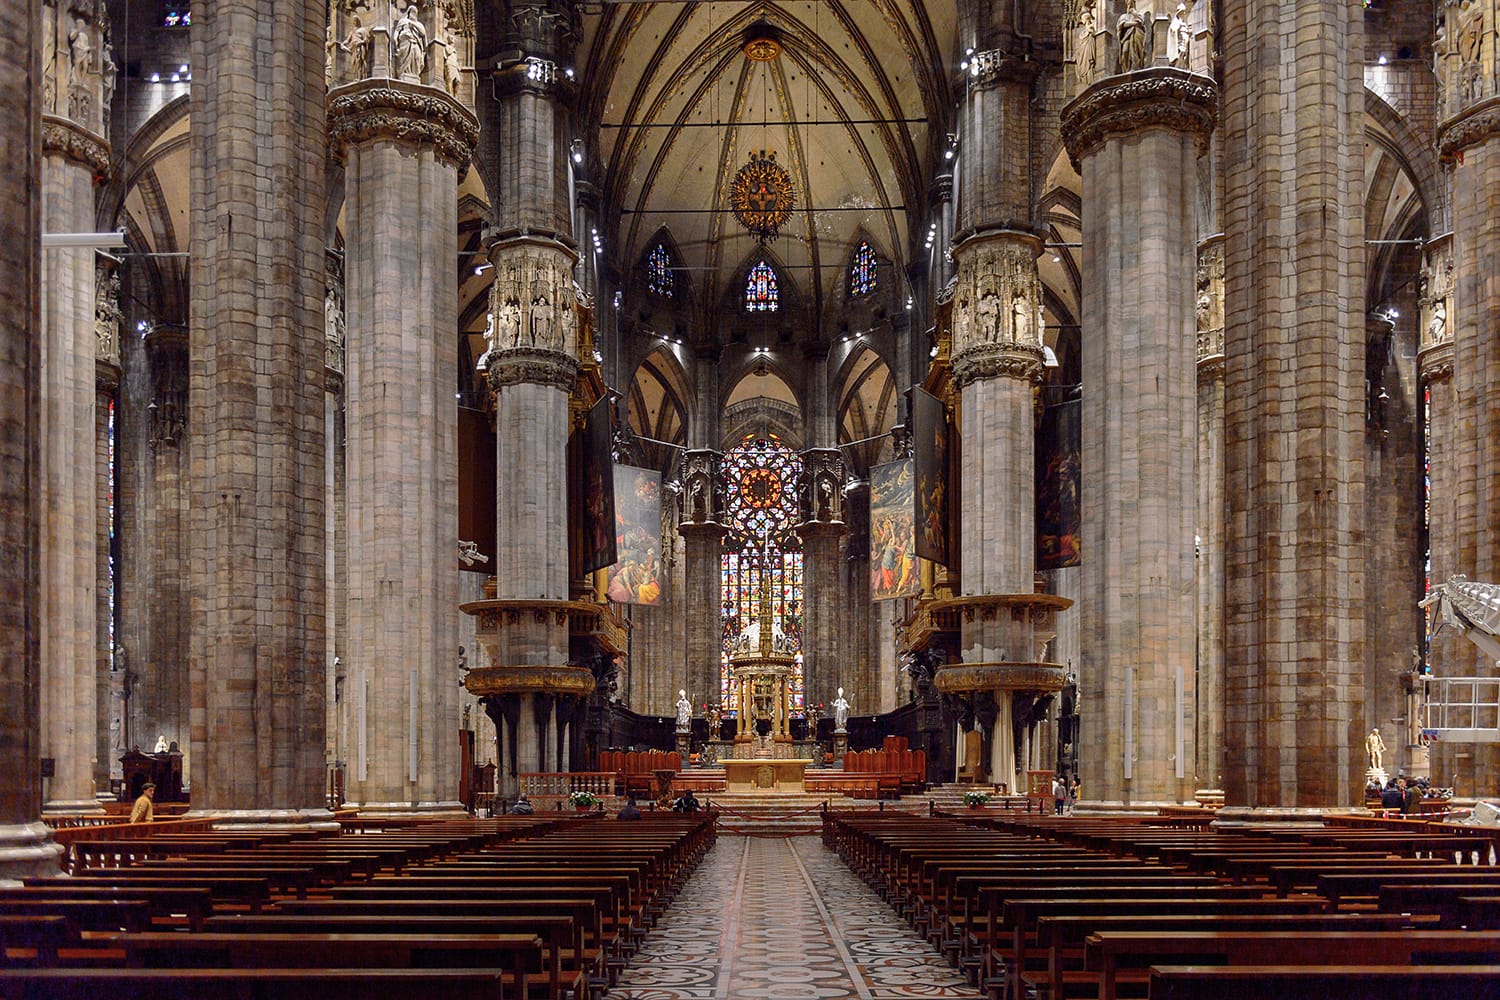 Εσωτερικό του Duomo di Milano (Θόλος του Μιλάνου), Μιλάνο, Ιταλία. Μητροπολιτικός Καθεδρικός Ναός-Βασιλική Γεννήσεως της Αγίας Μαρίας